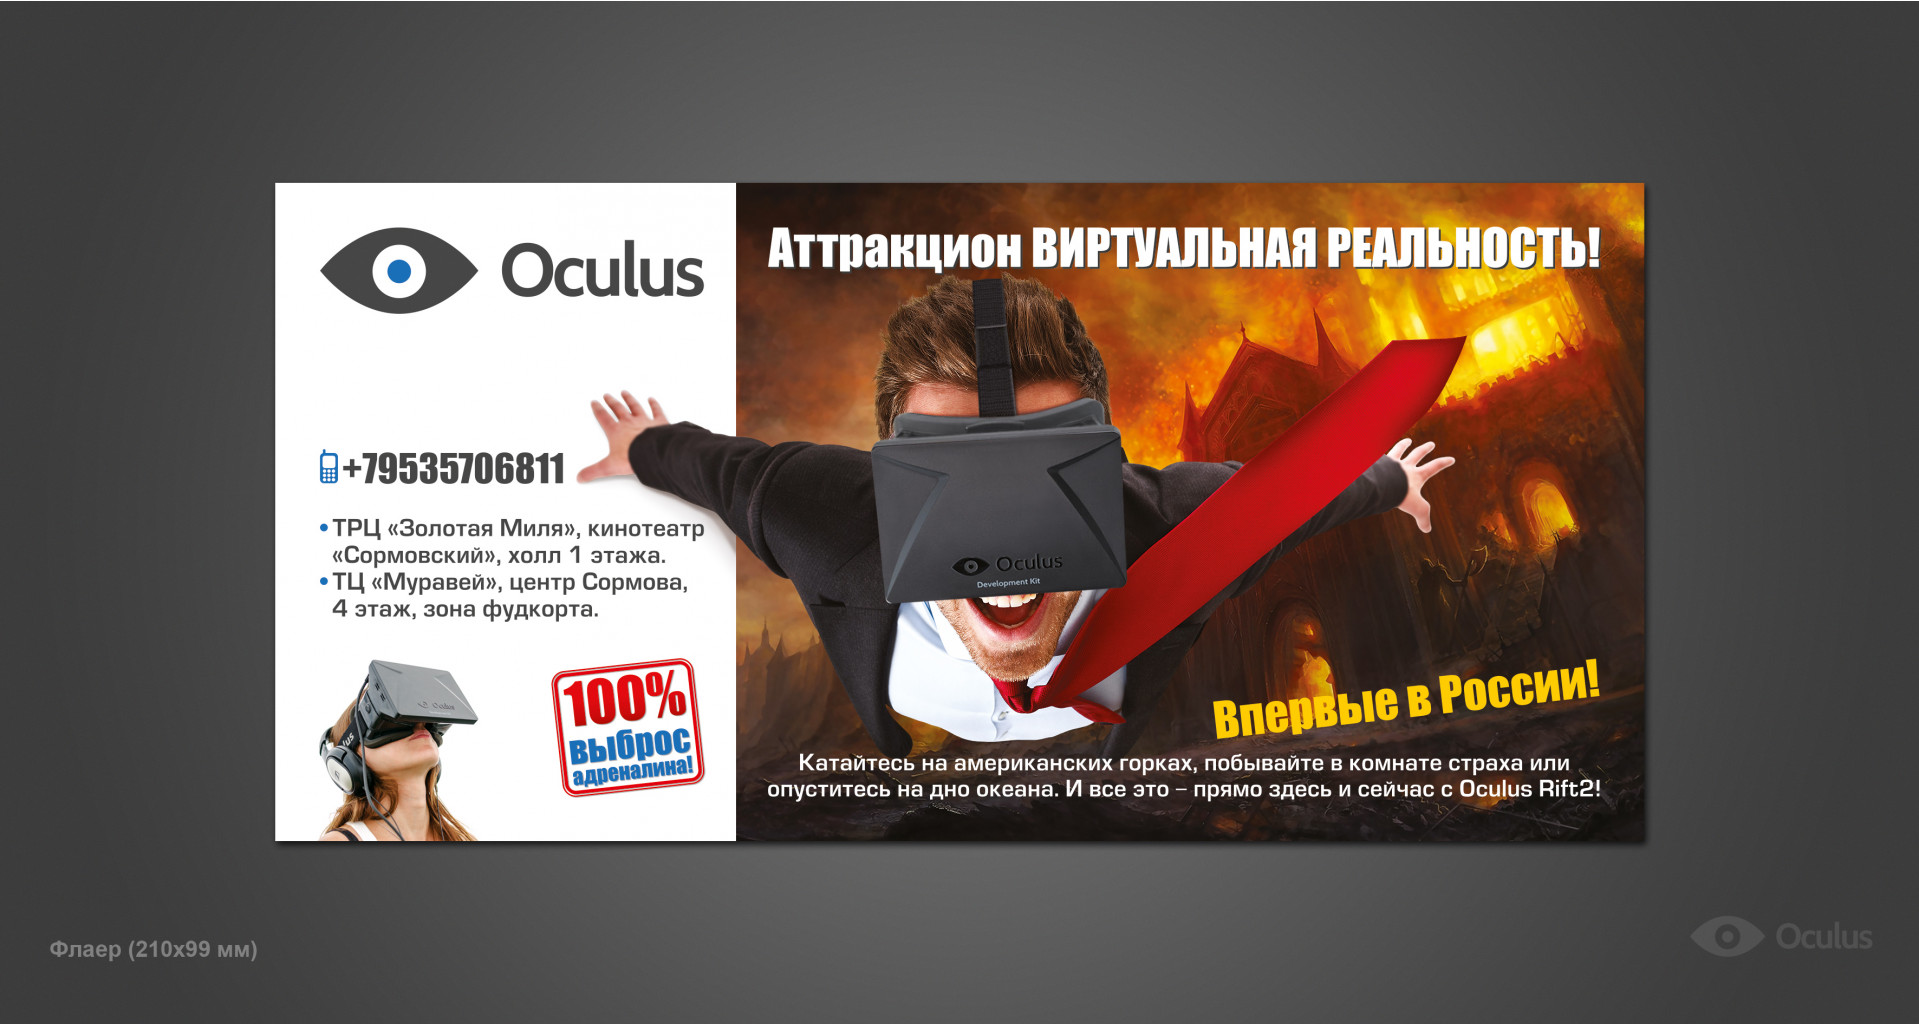 103. Oculus -  214103